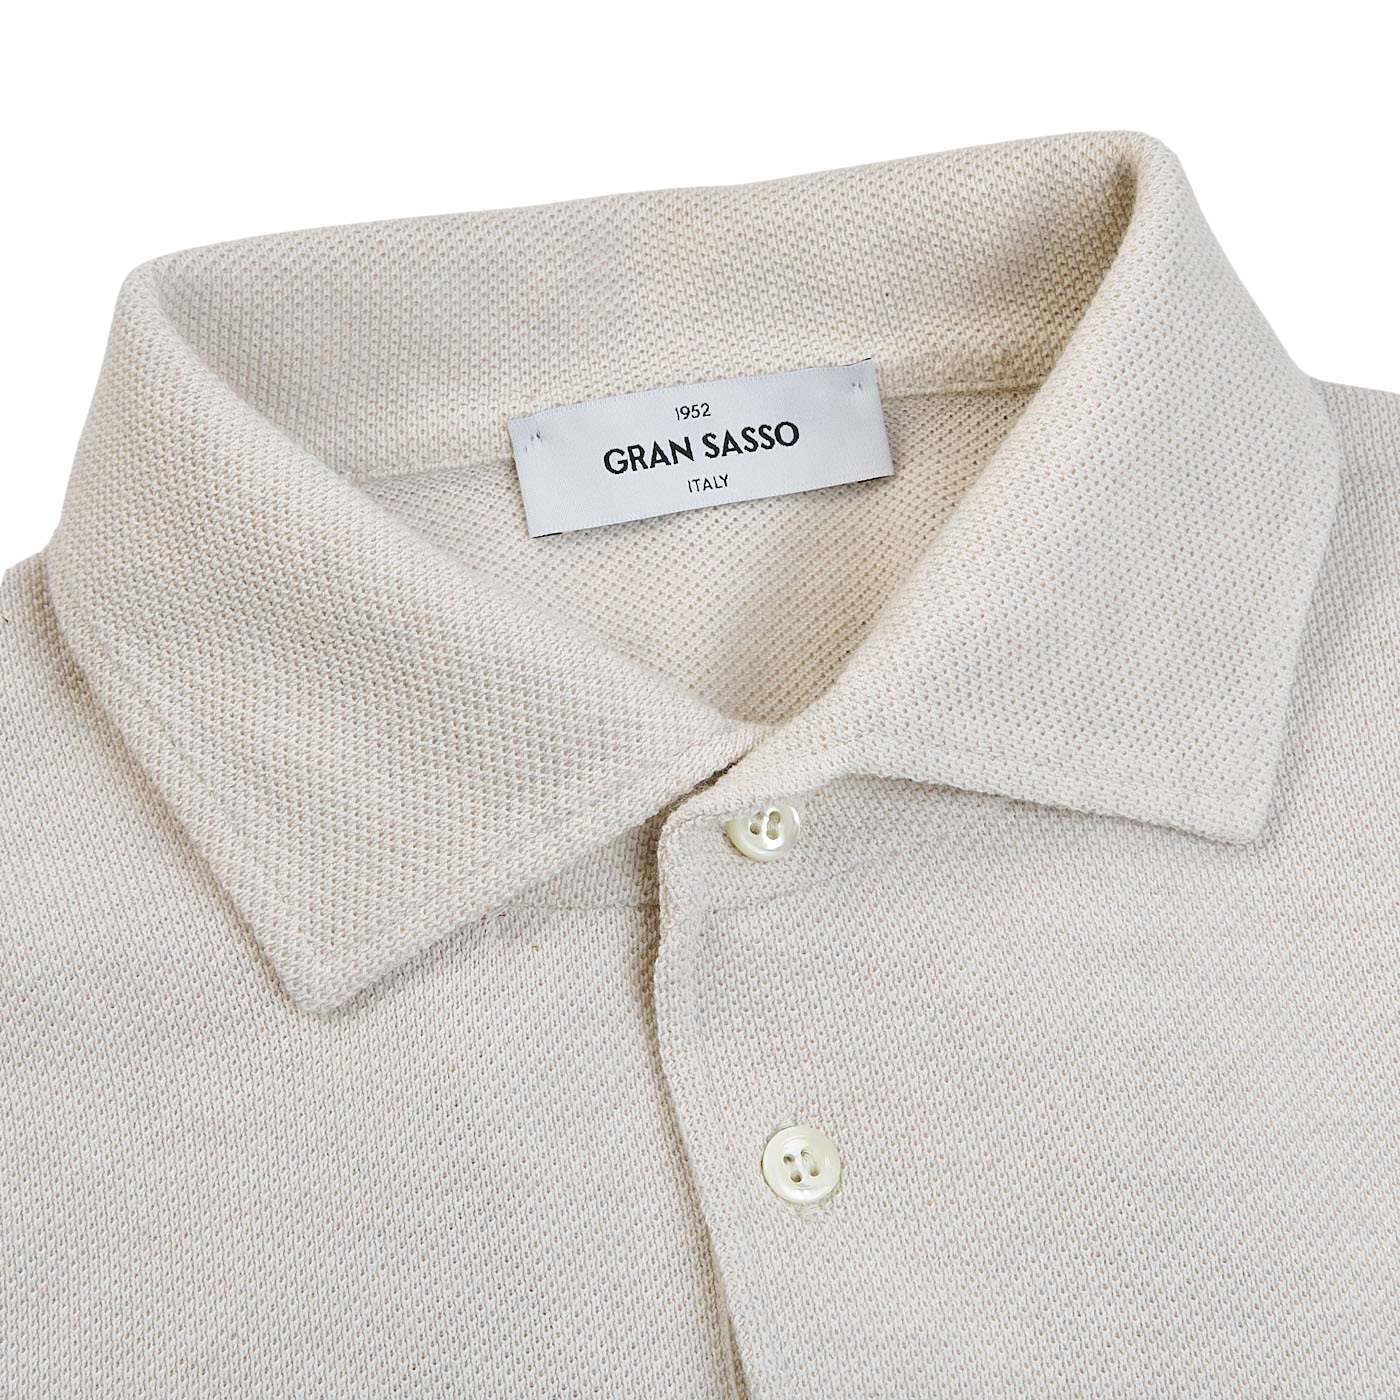 Gran Sasso Cream Fresh Cotton Mesh Polo Shirt Collar